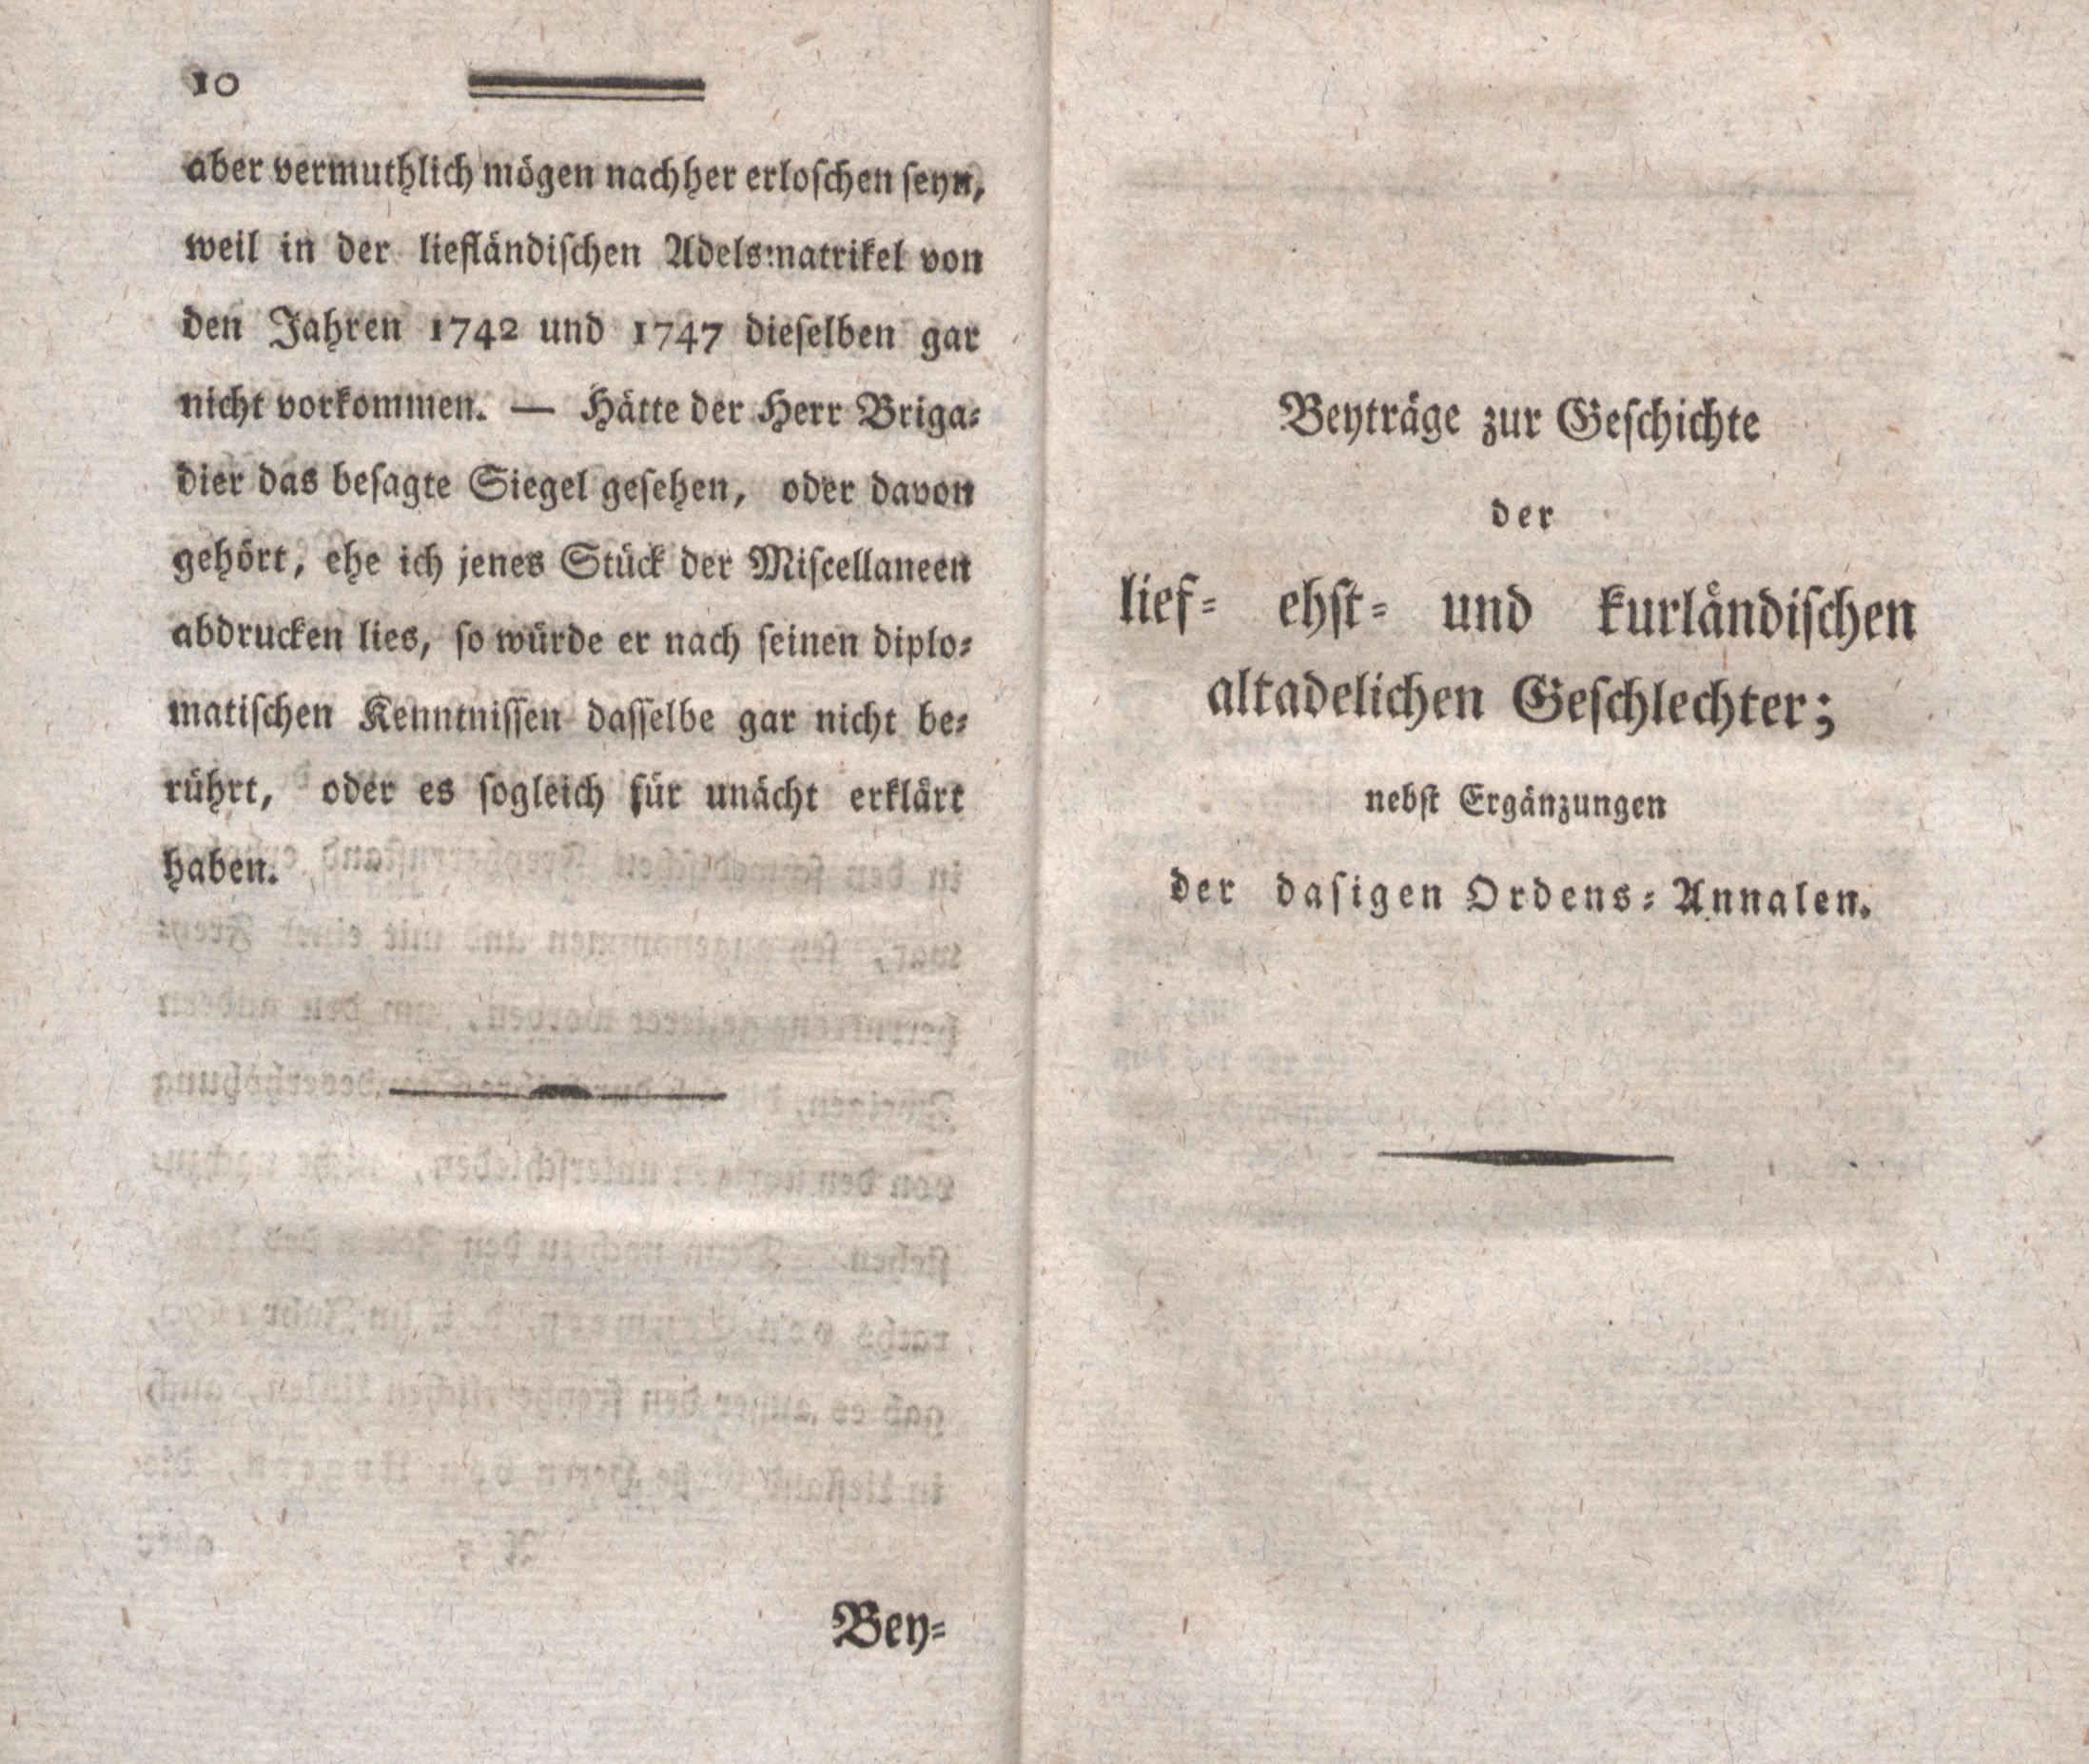 Beyträge zur Geschichte der lief-, ehst- und kurländischen altadelichen Geschlechter (1794) | 1. (10-11) Предисловие, Основной текст